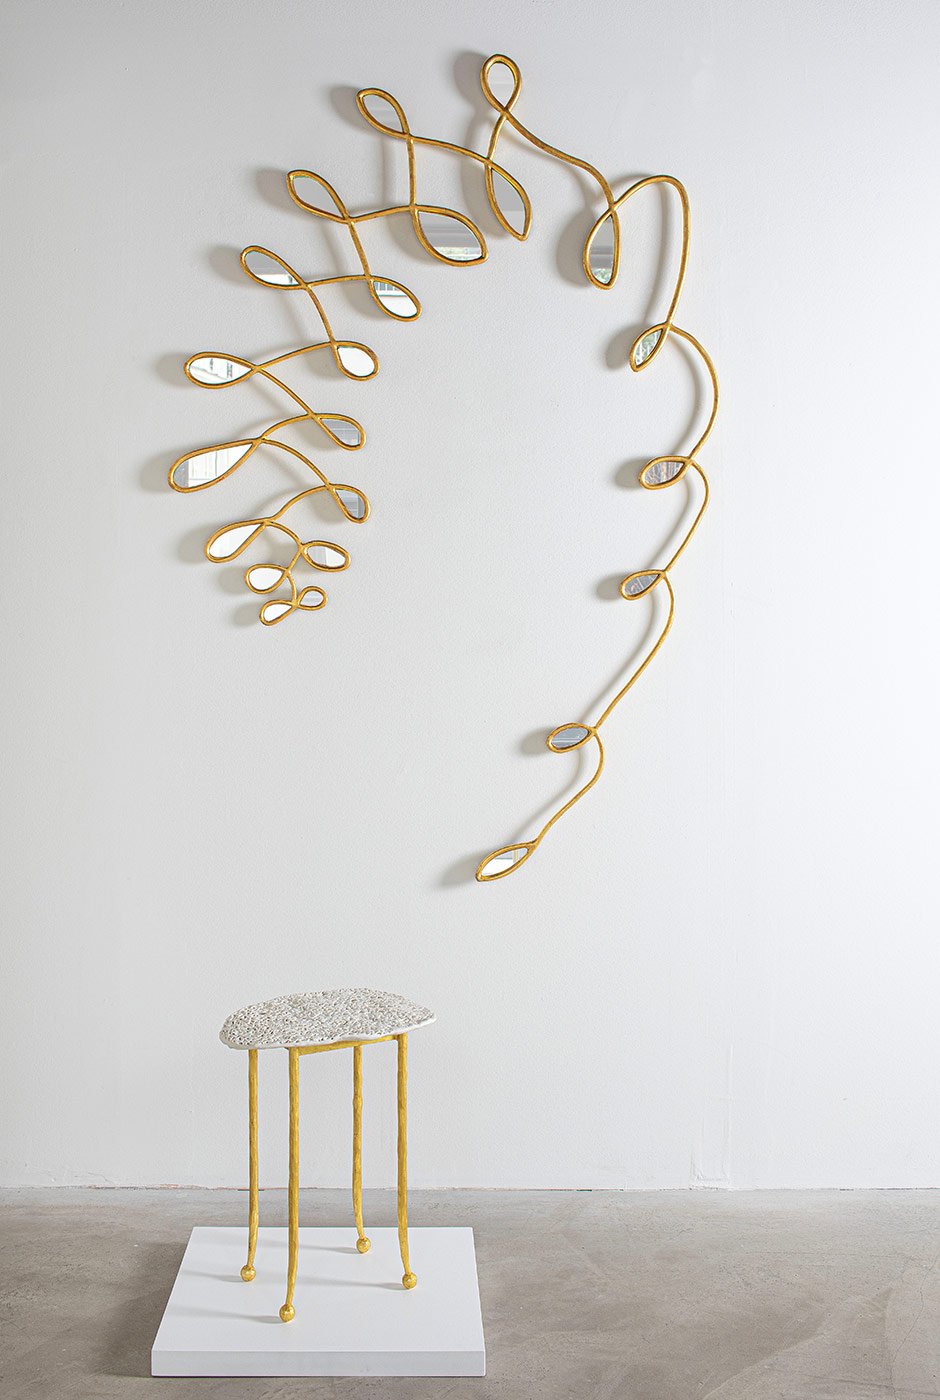 Formsache: Die Französin Célia Bertrand pflegt einen sehr extravaganten Zugang, wenn sie für ihre skulpturalen Designs Materialien in Form bringt. galerie-sceneouverte.com